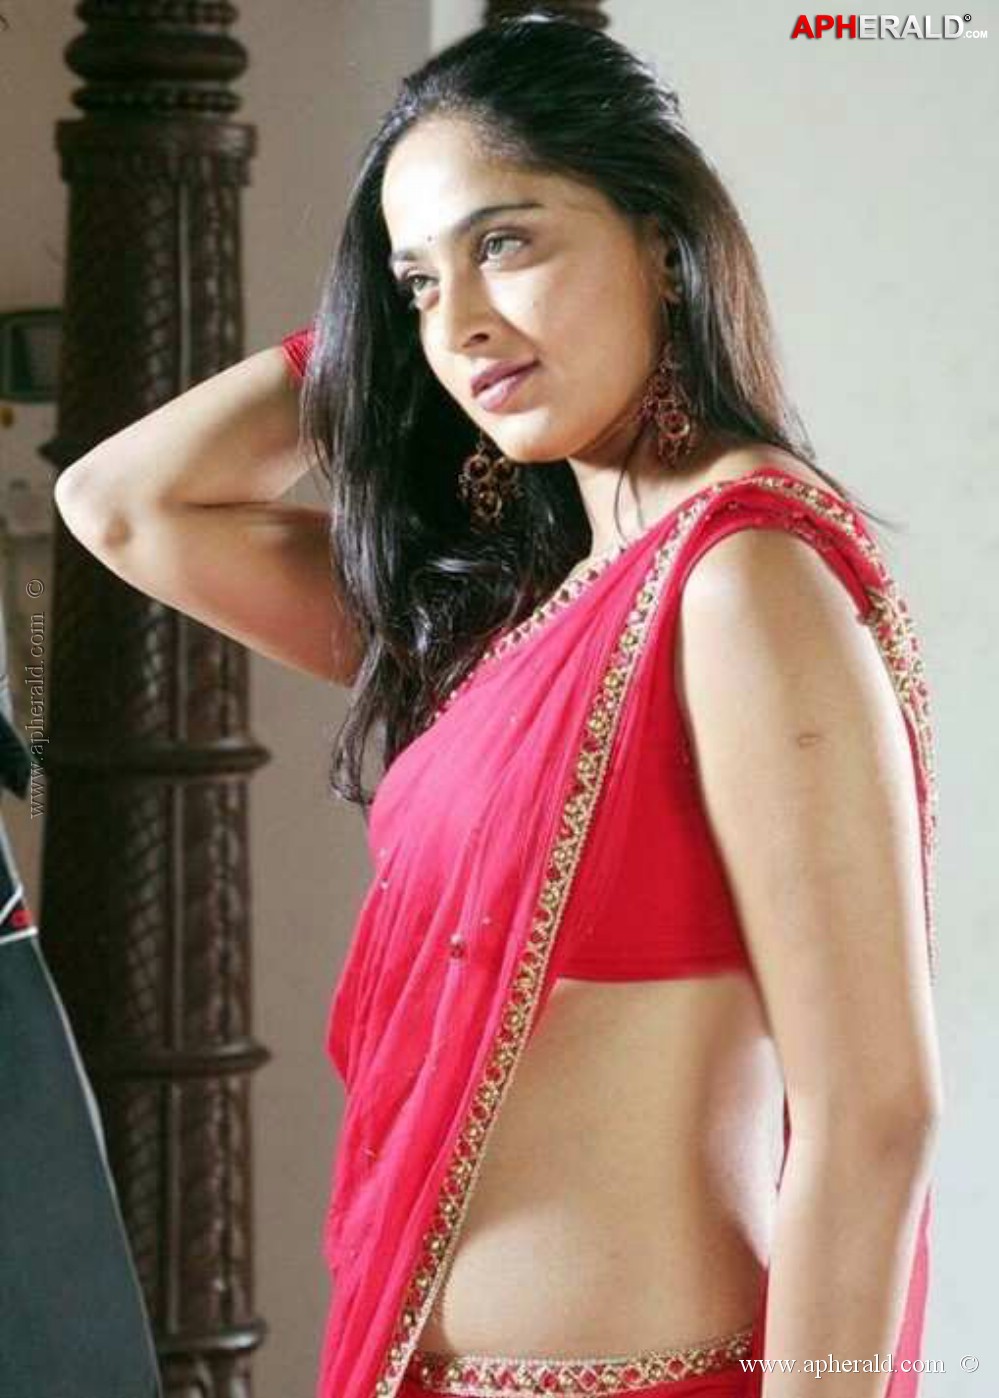 Tollywood Actress Hot Look in Saree